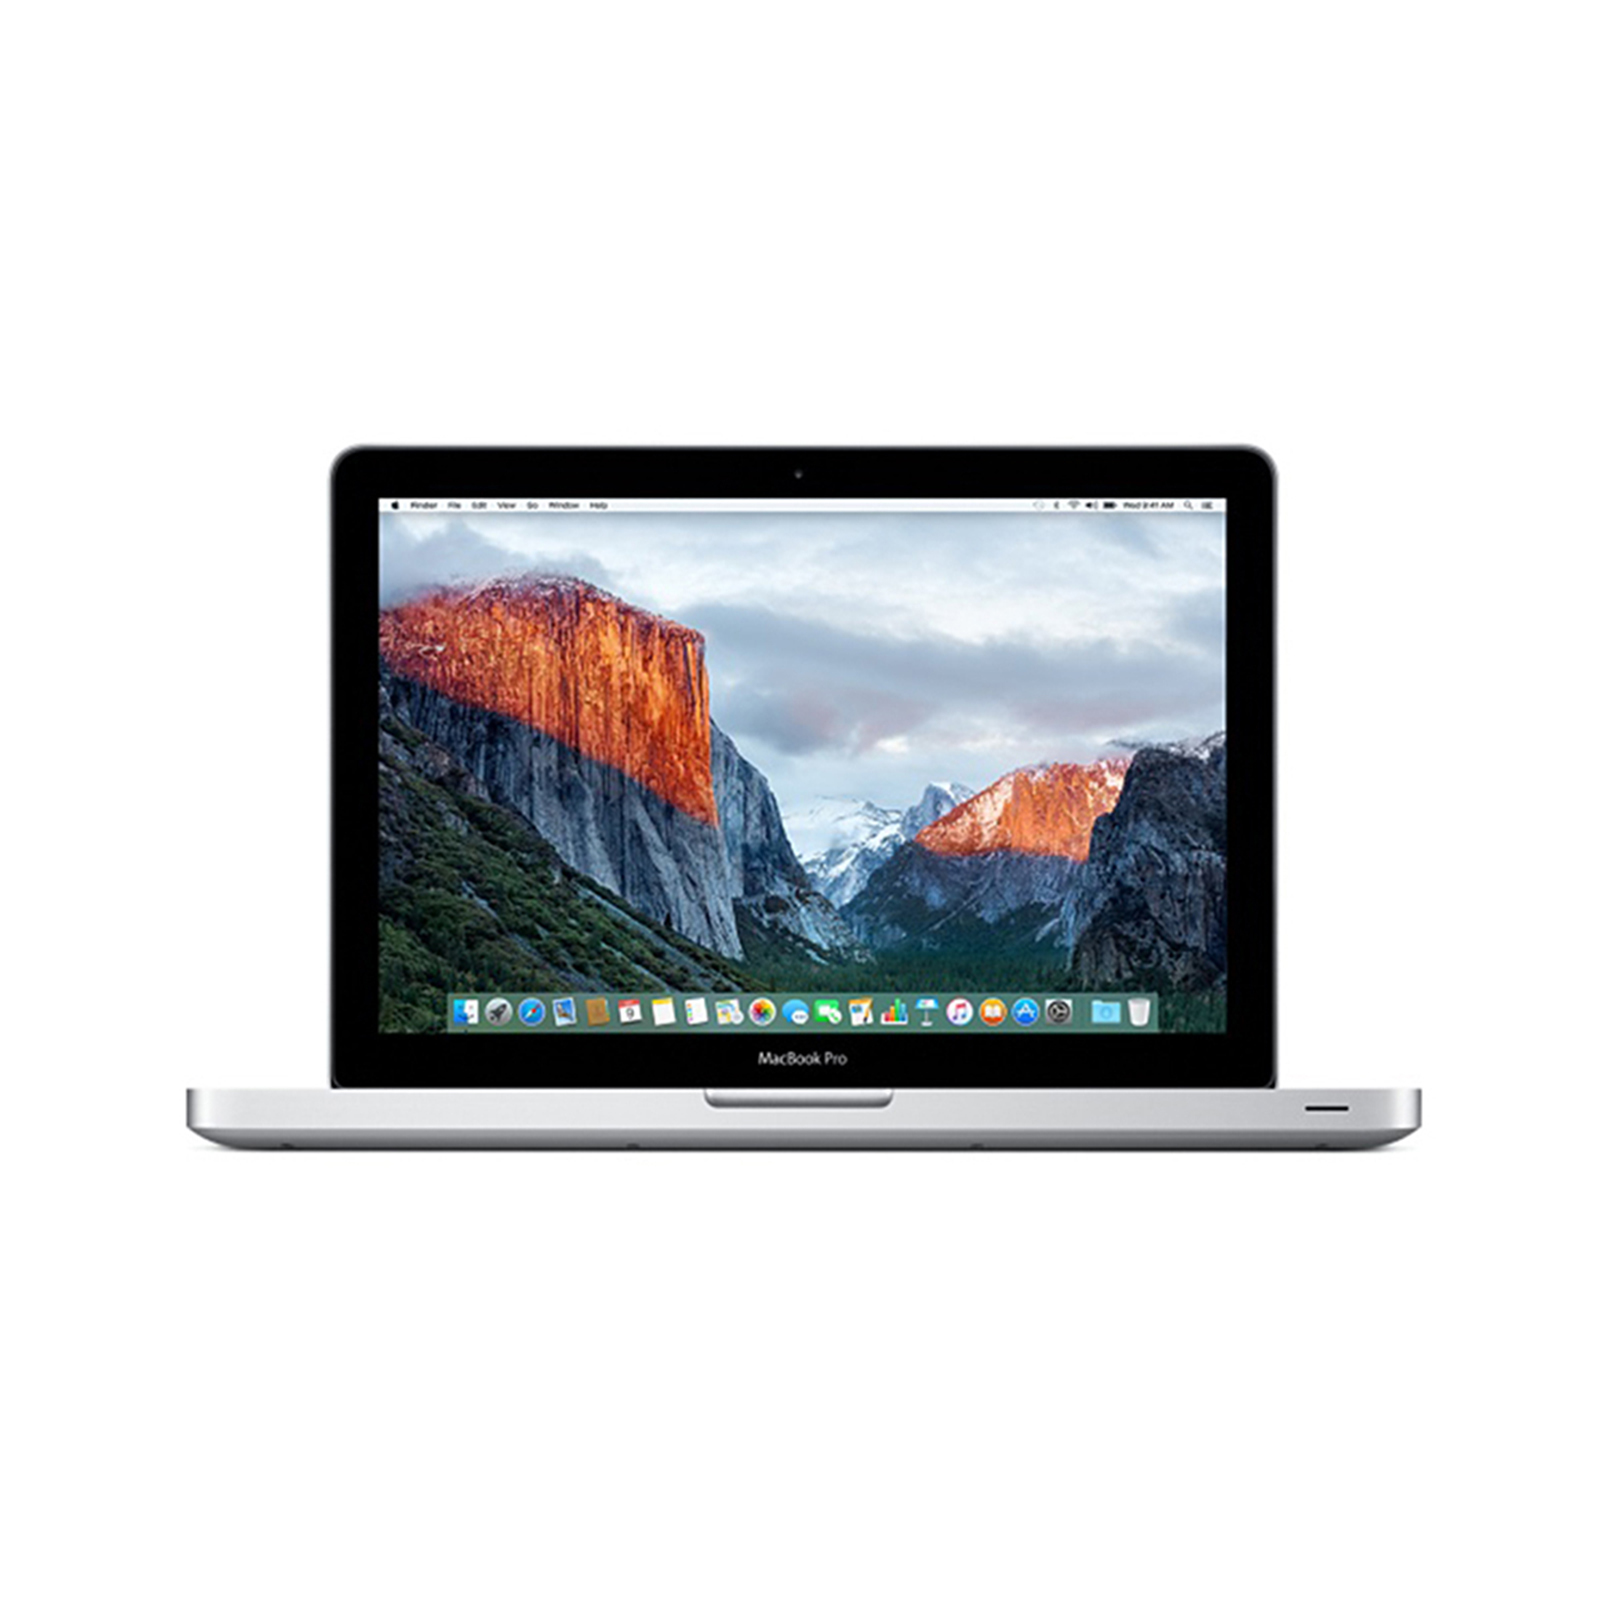 MacBook Pro 13" Mid 2012 - Core i7 2.9Ghz / 8GB RAM / 750GB HDD